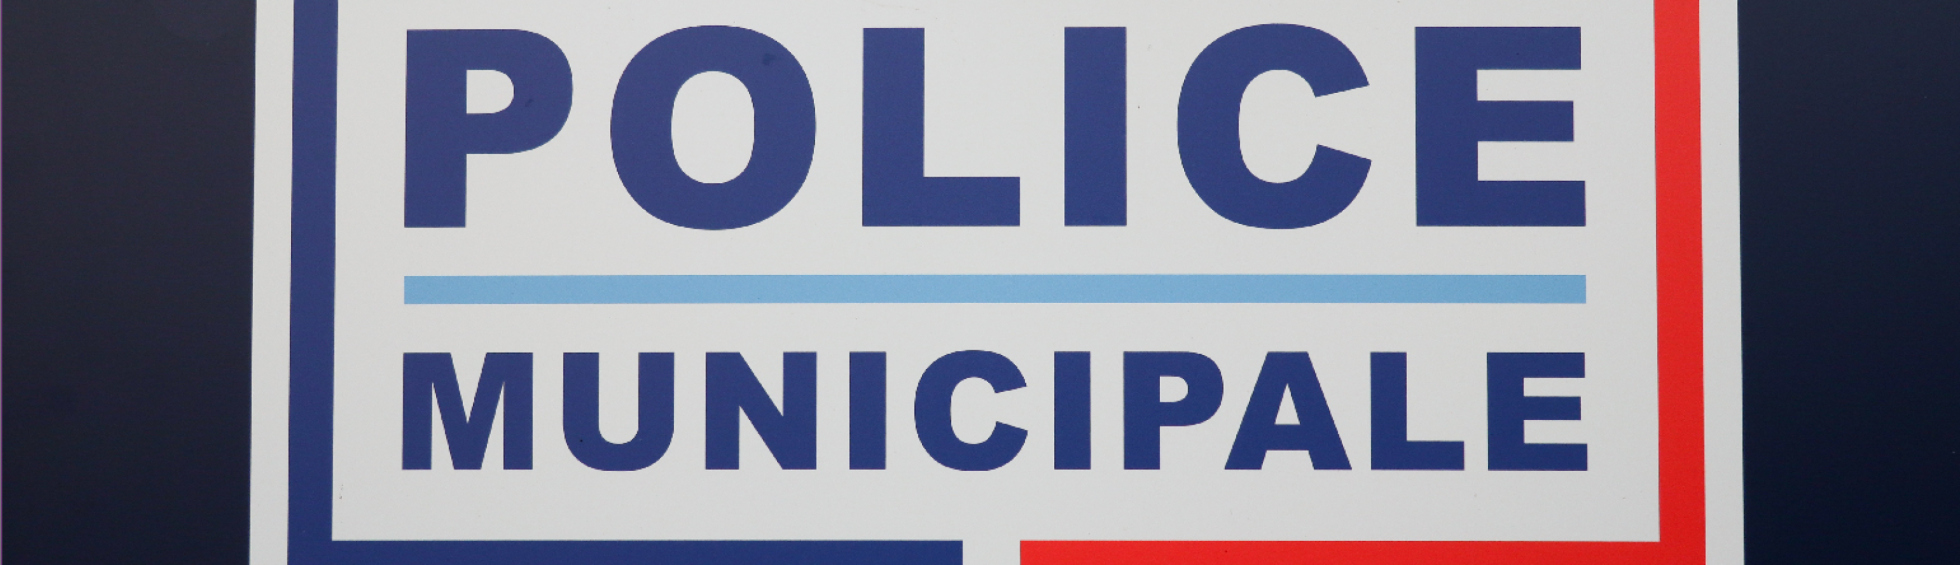 Police municipale 